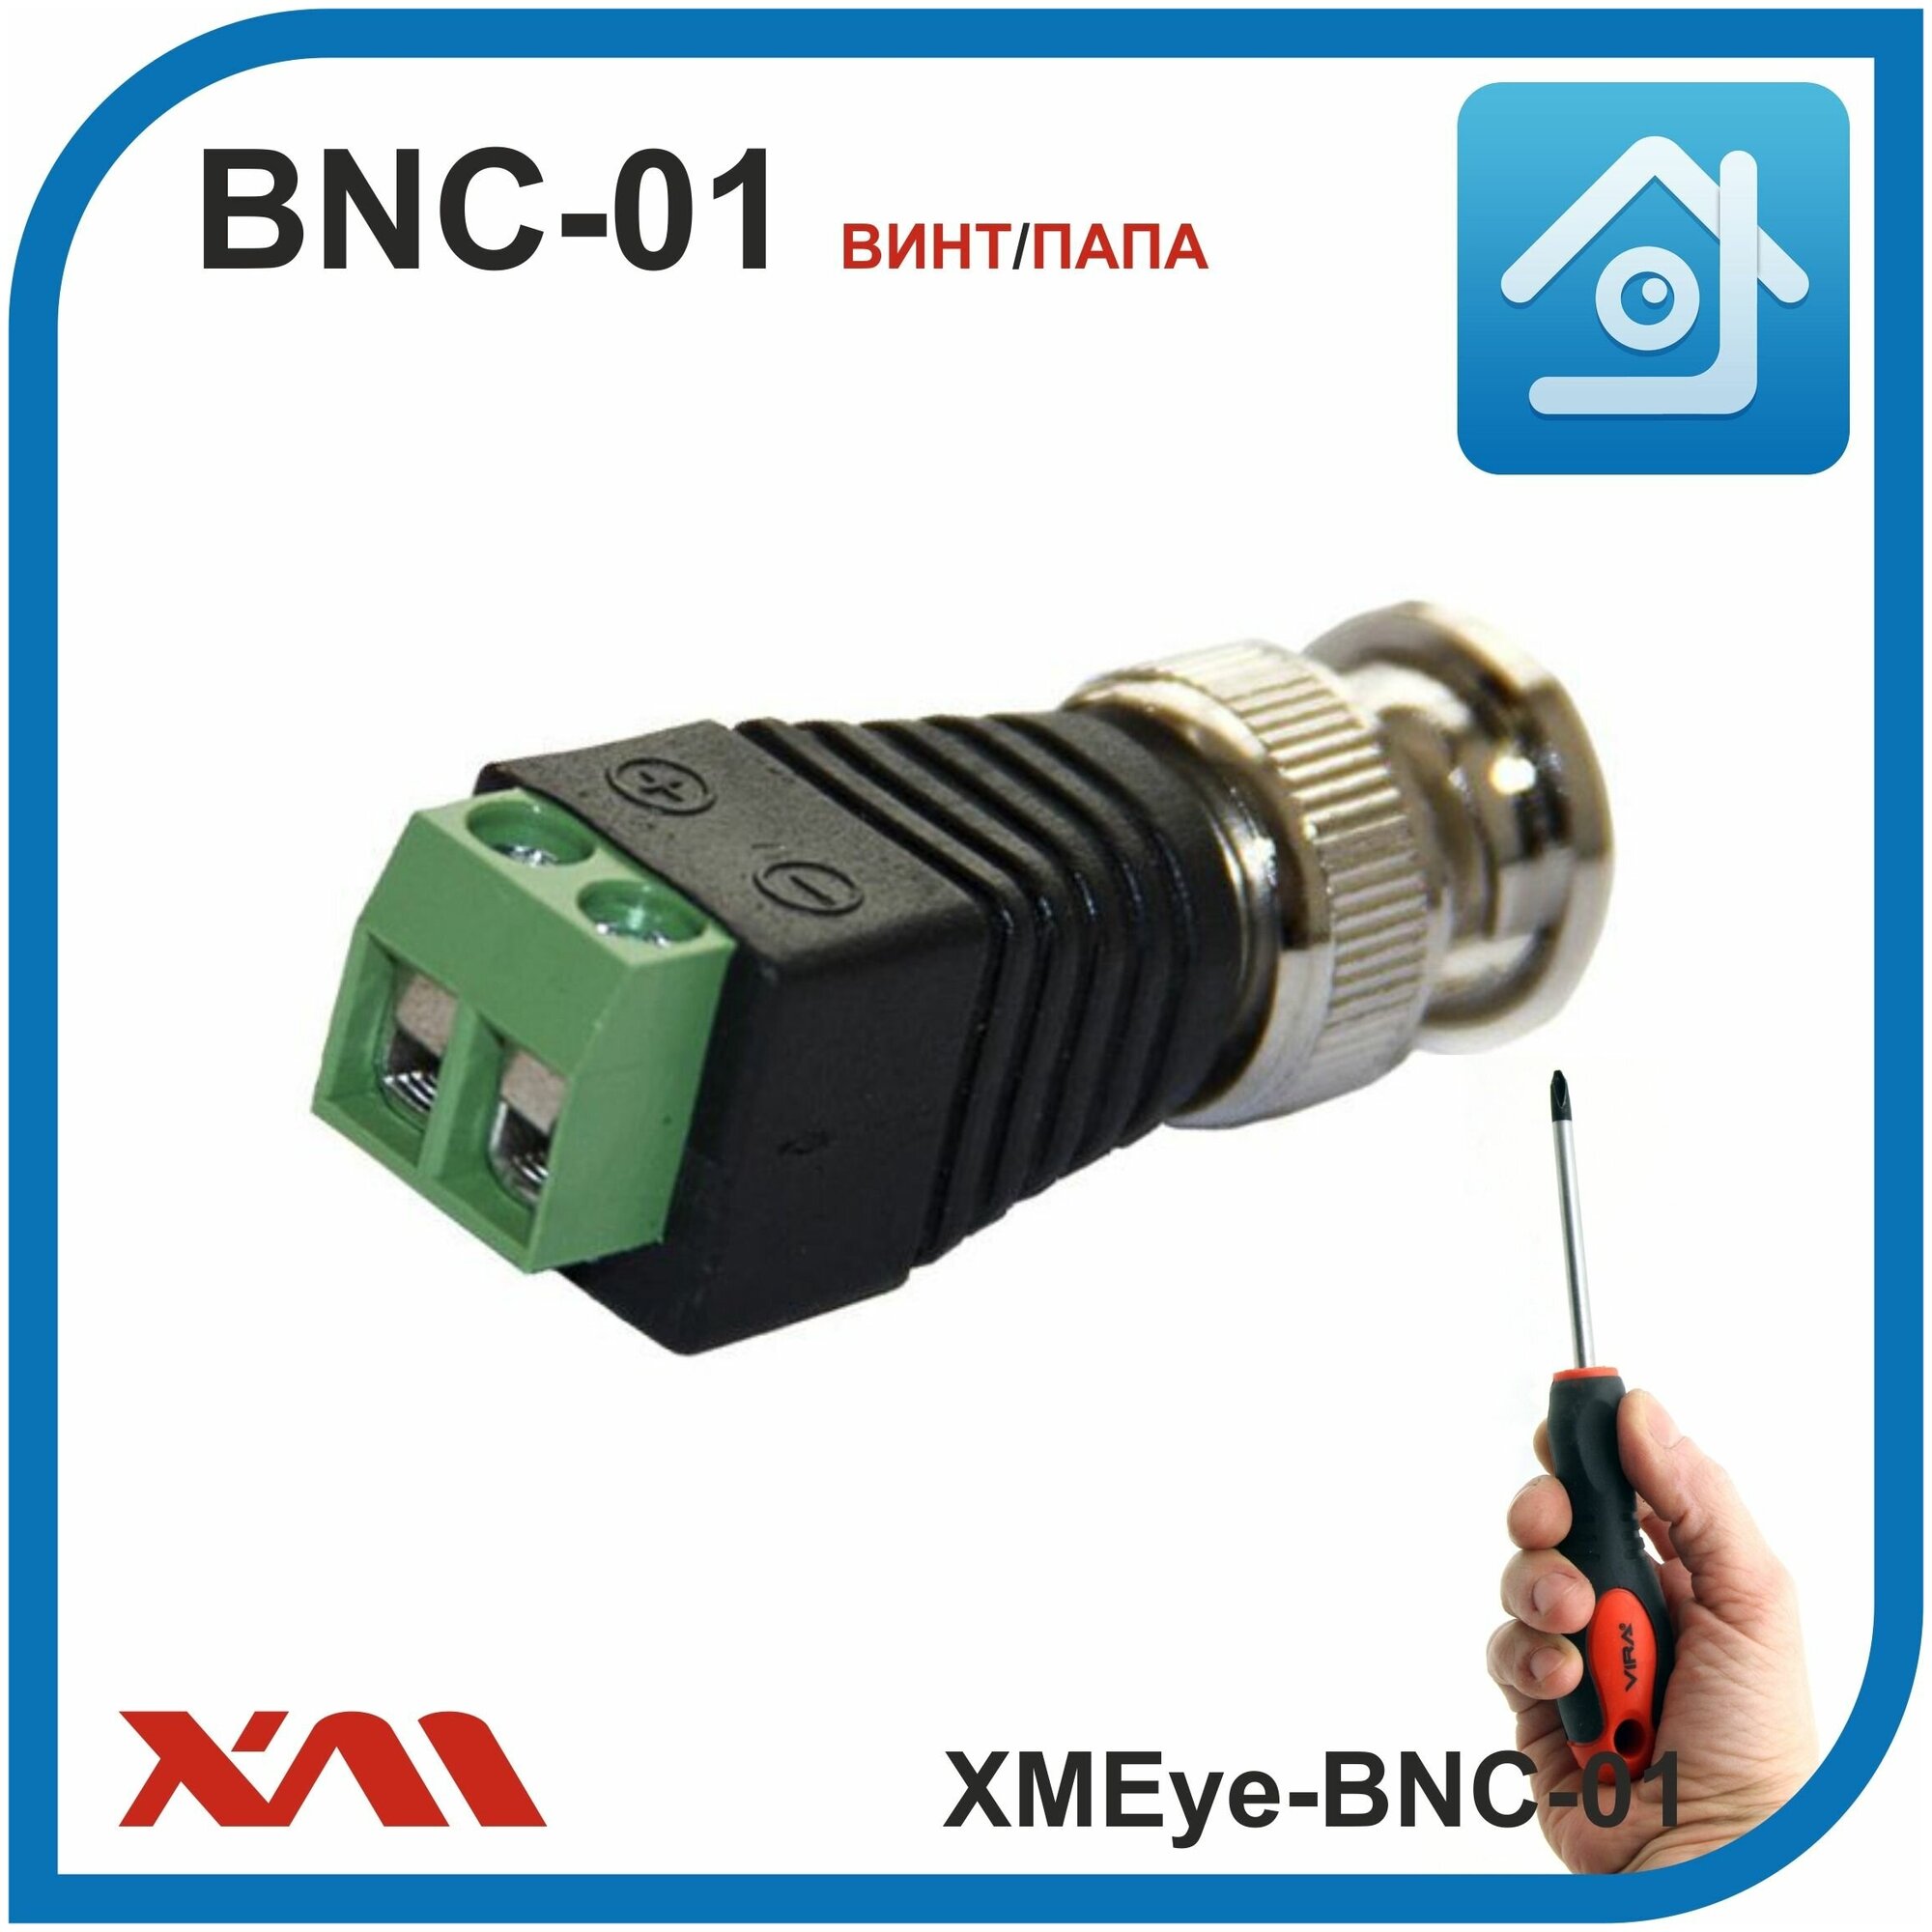 BNC разъем под отвертку для видеокамер XMEye-BNC-01 (винт/папа) комплект: 10 